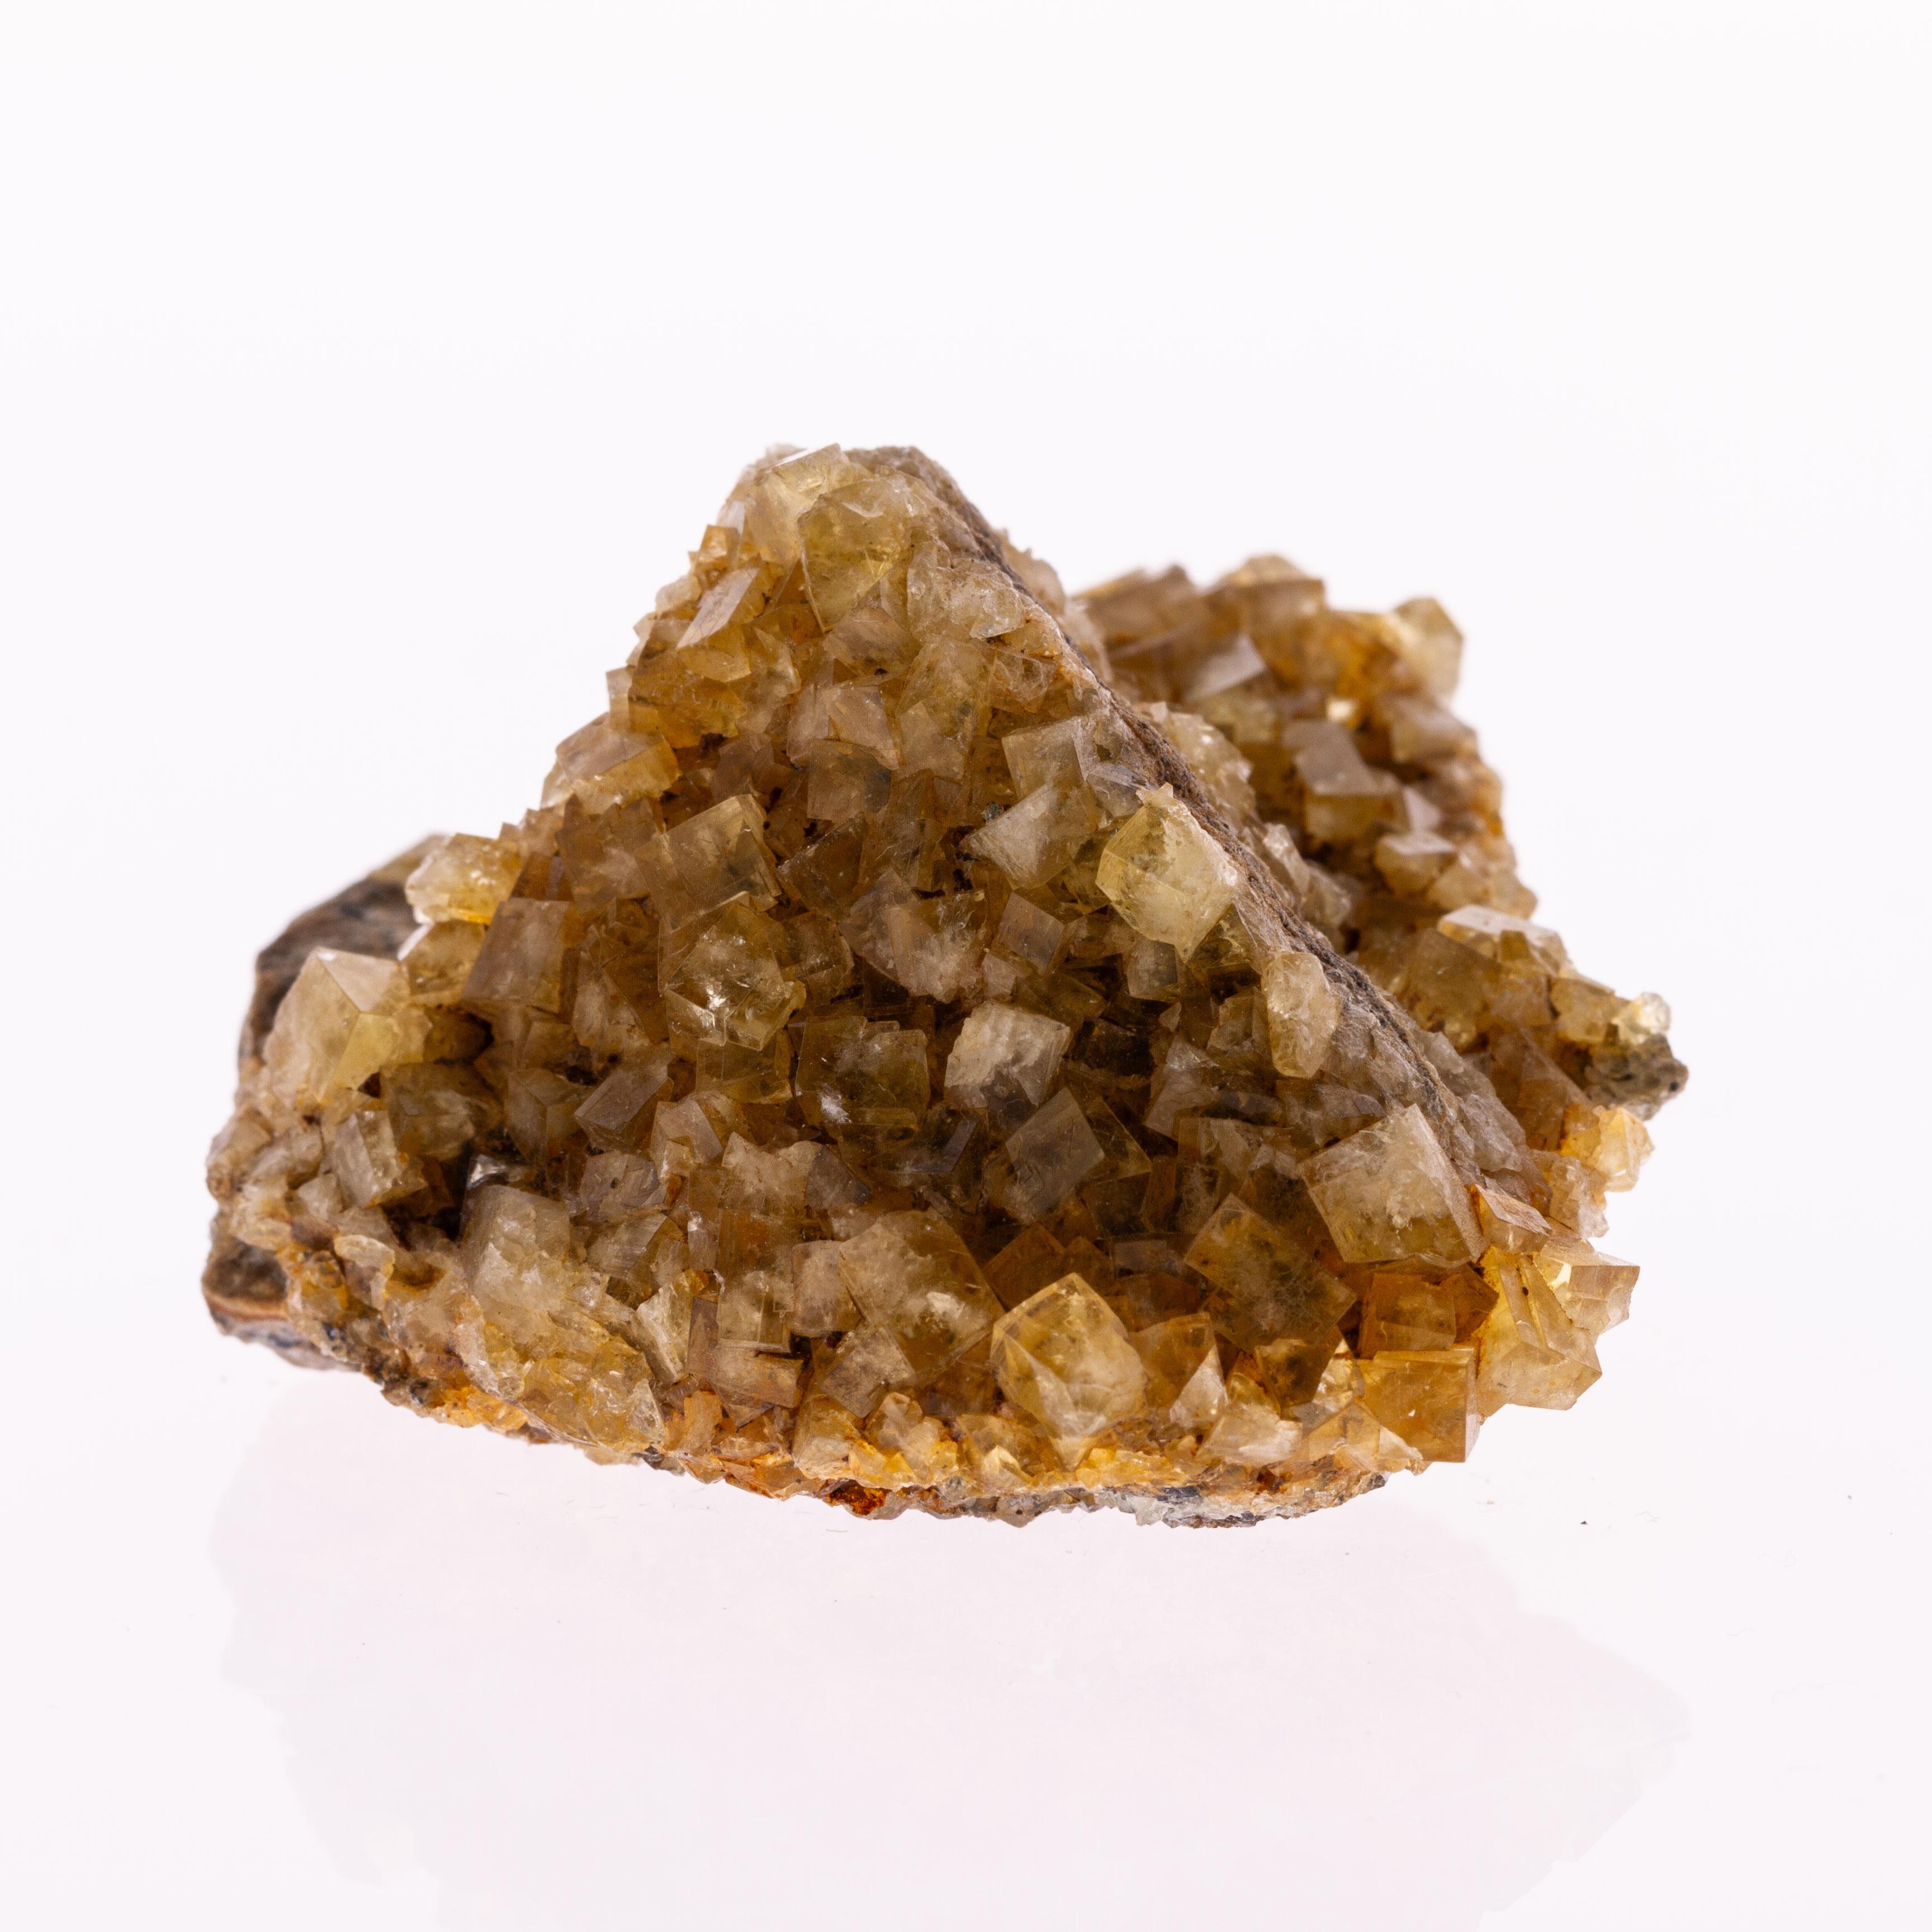 20th Century Natural History - Fluorite Gemstone Geode Specimen Crystals Cluster